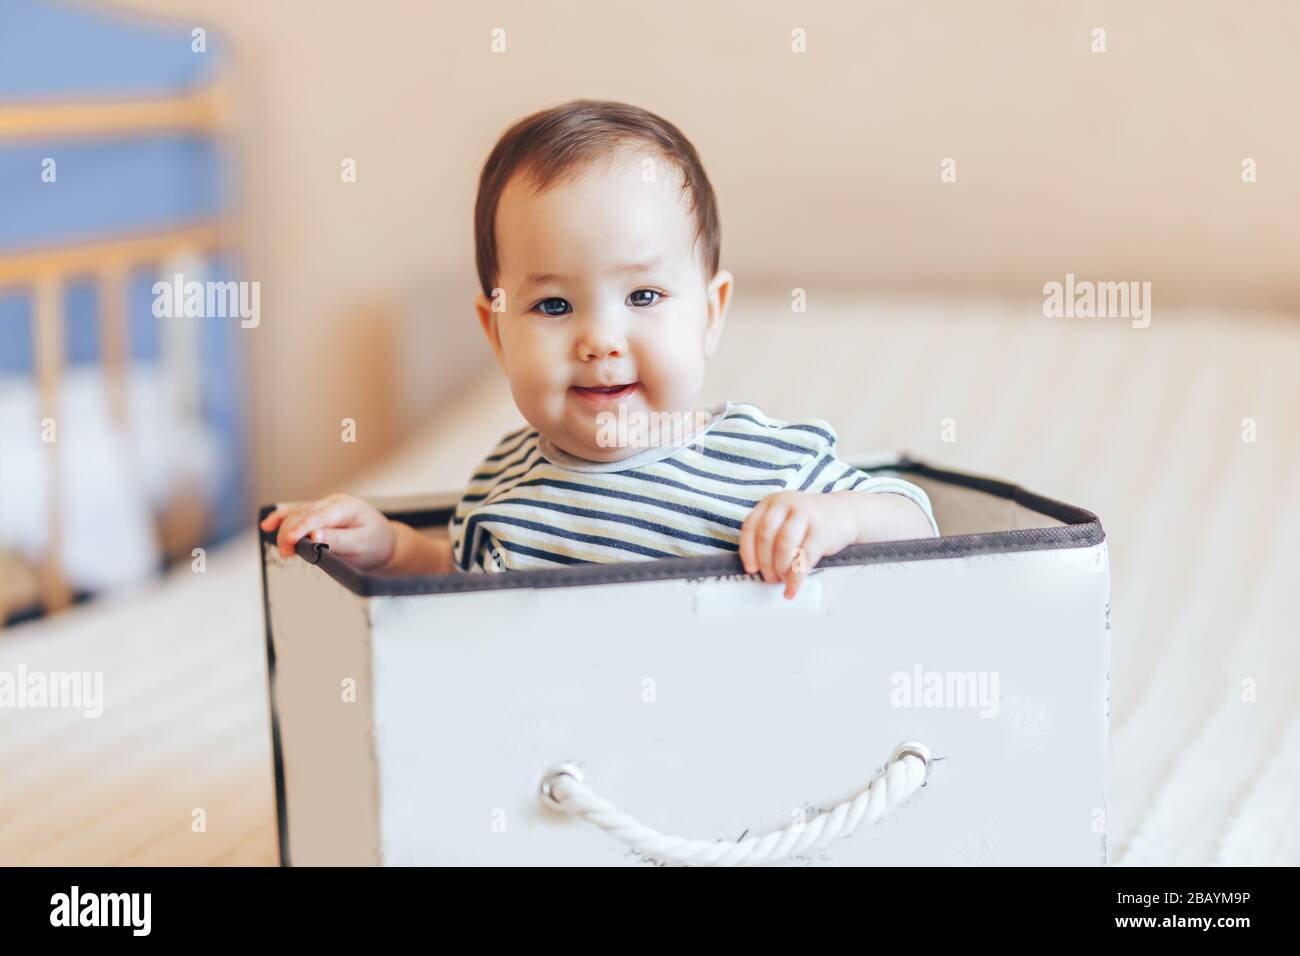 joli bébé garçon ou fille assis à l'intérieur d'une boîte dans l'appartement Banque D'Images